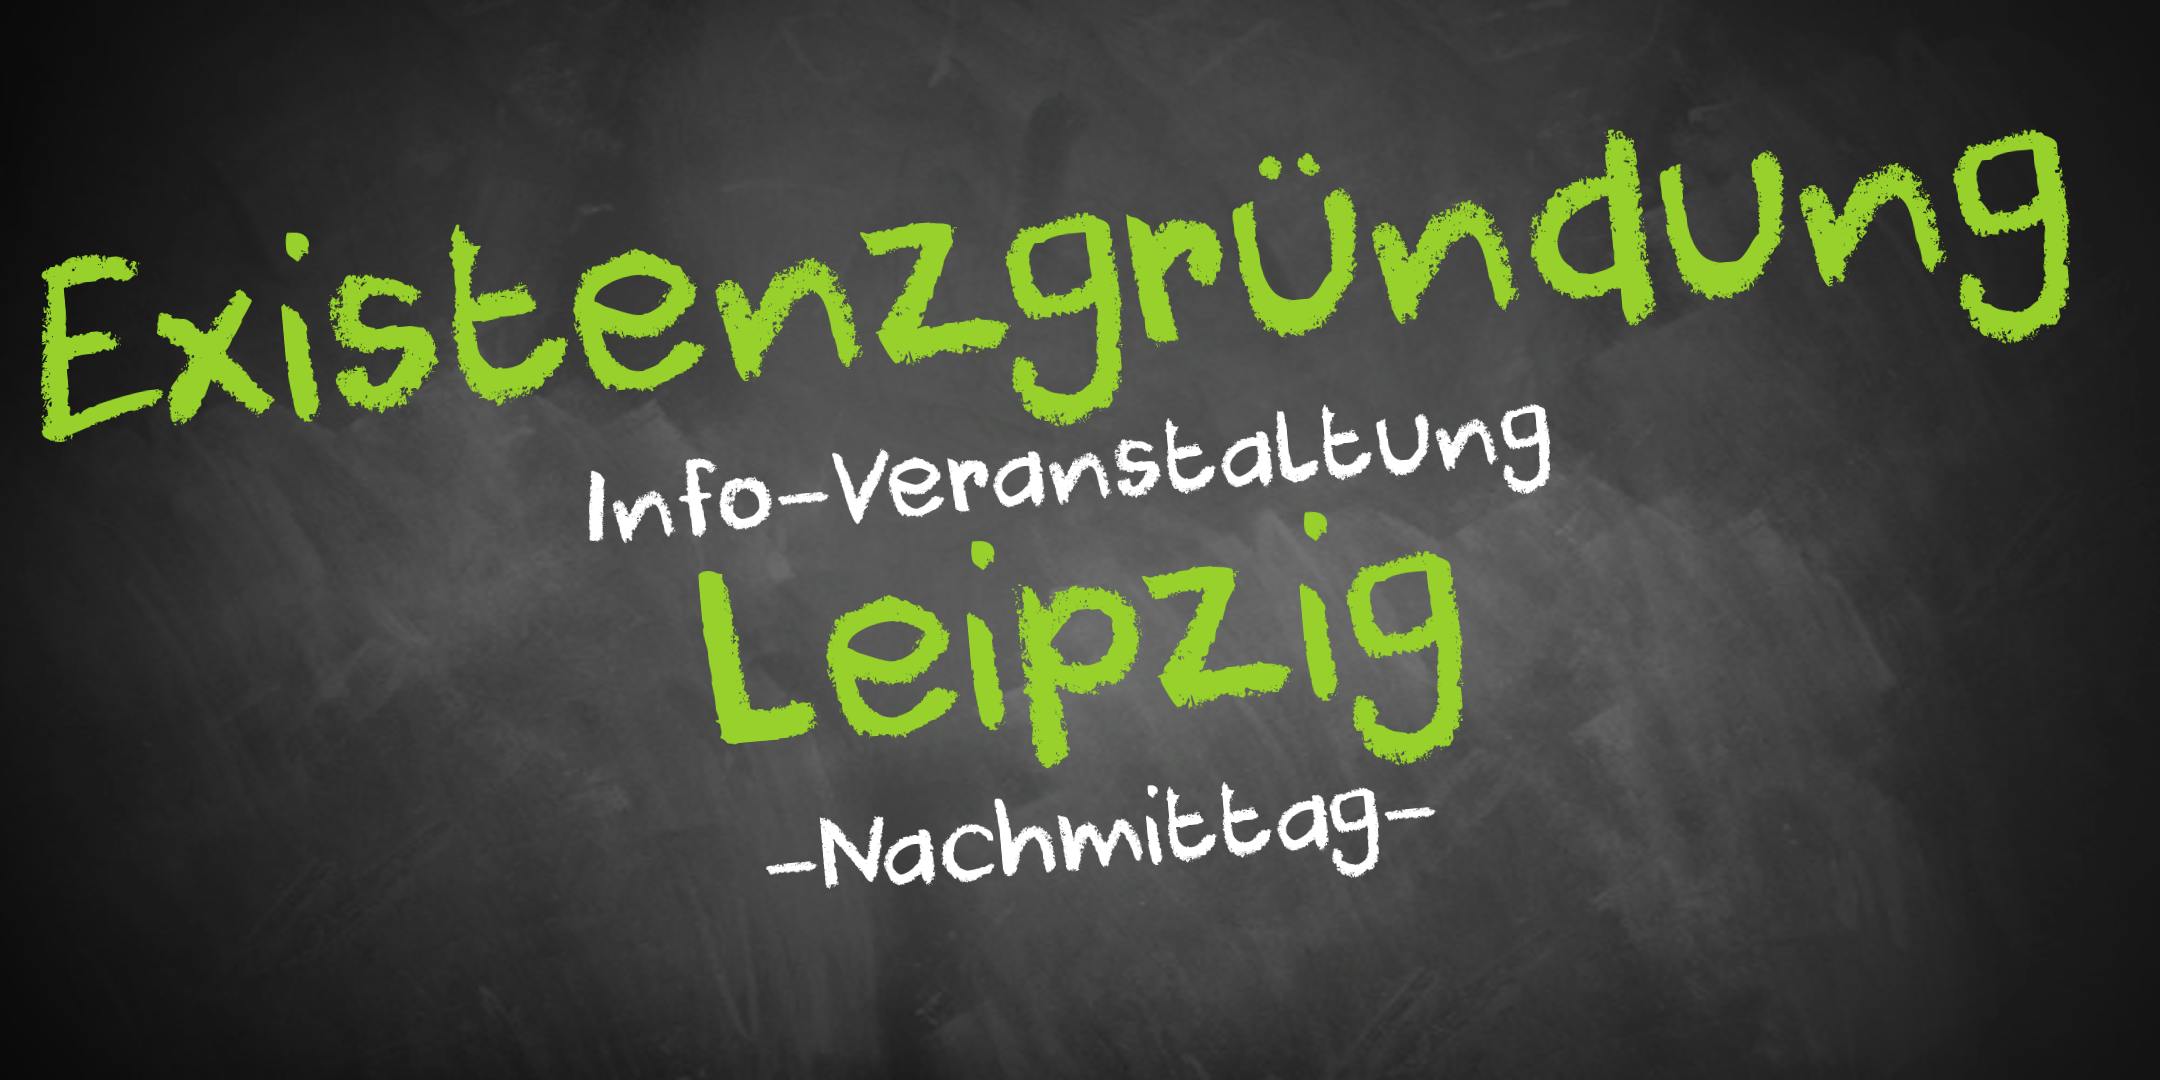 Existenzgründung Informationsveranstaltung Leipzig (Nachmittag)